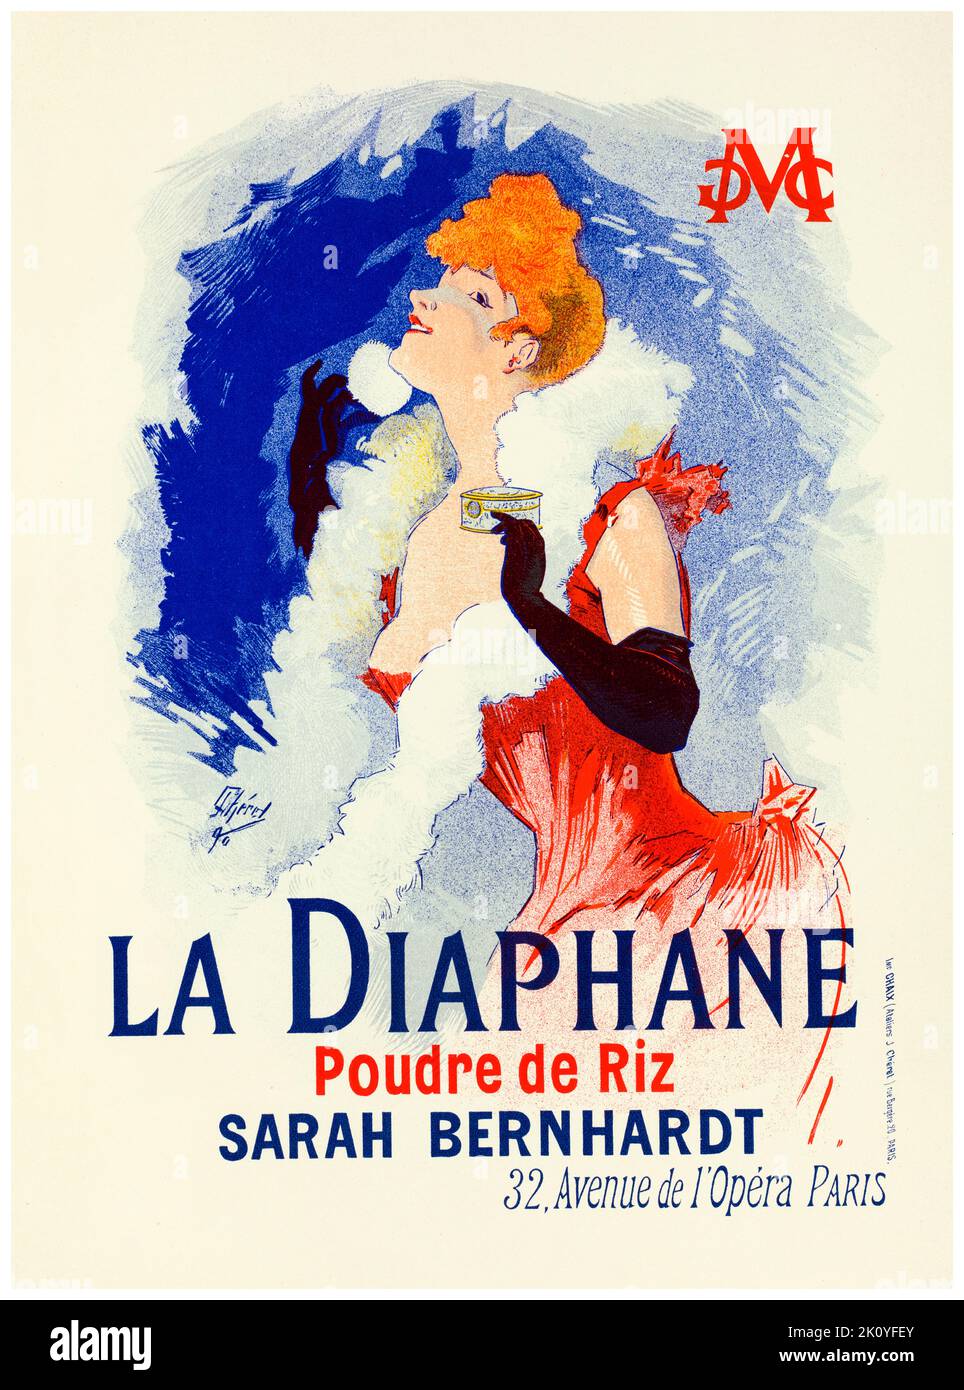 Affiche vintage datant du 19th siècle, Sarah Bernhardt (la Diaphane) de Jules Chéret, 1898 Banque D'Images